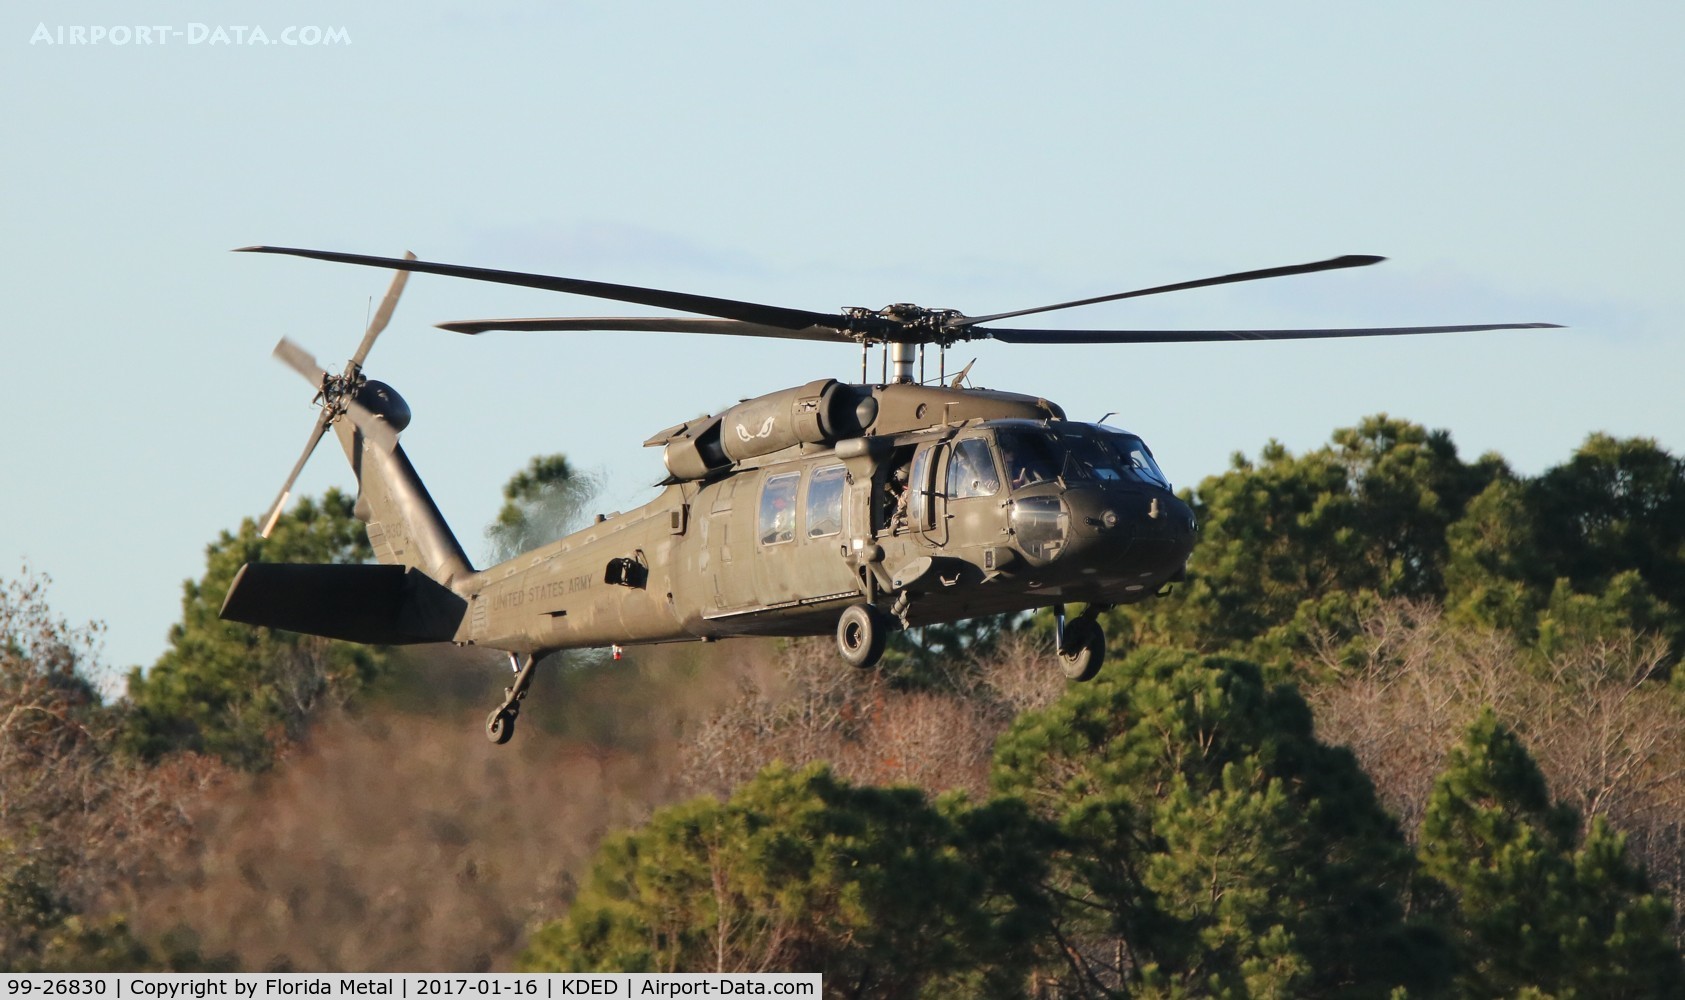 99-26830, 1998 Sikorsky UH-60L Black Hawk C/N n/a, UH-60 zx